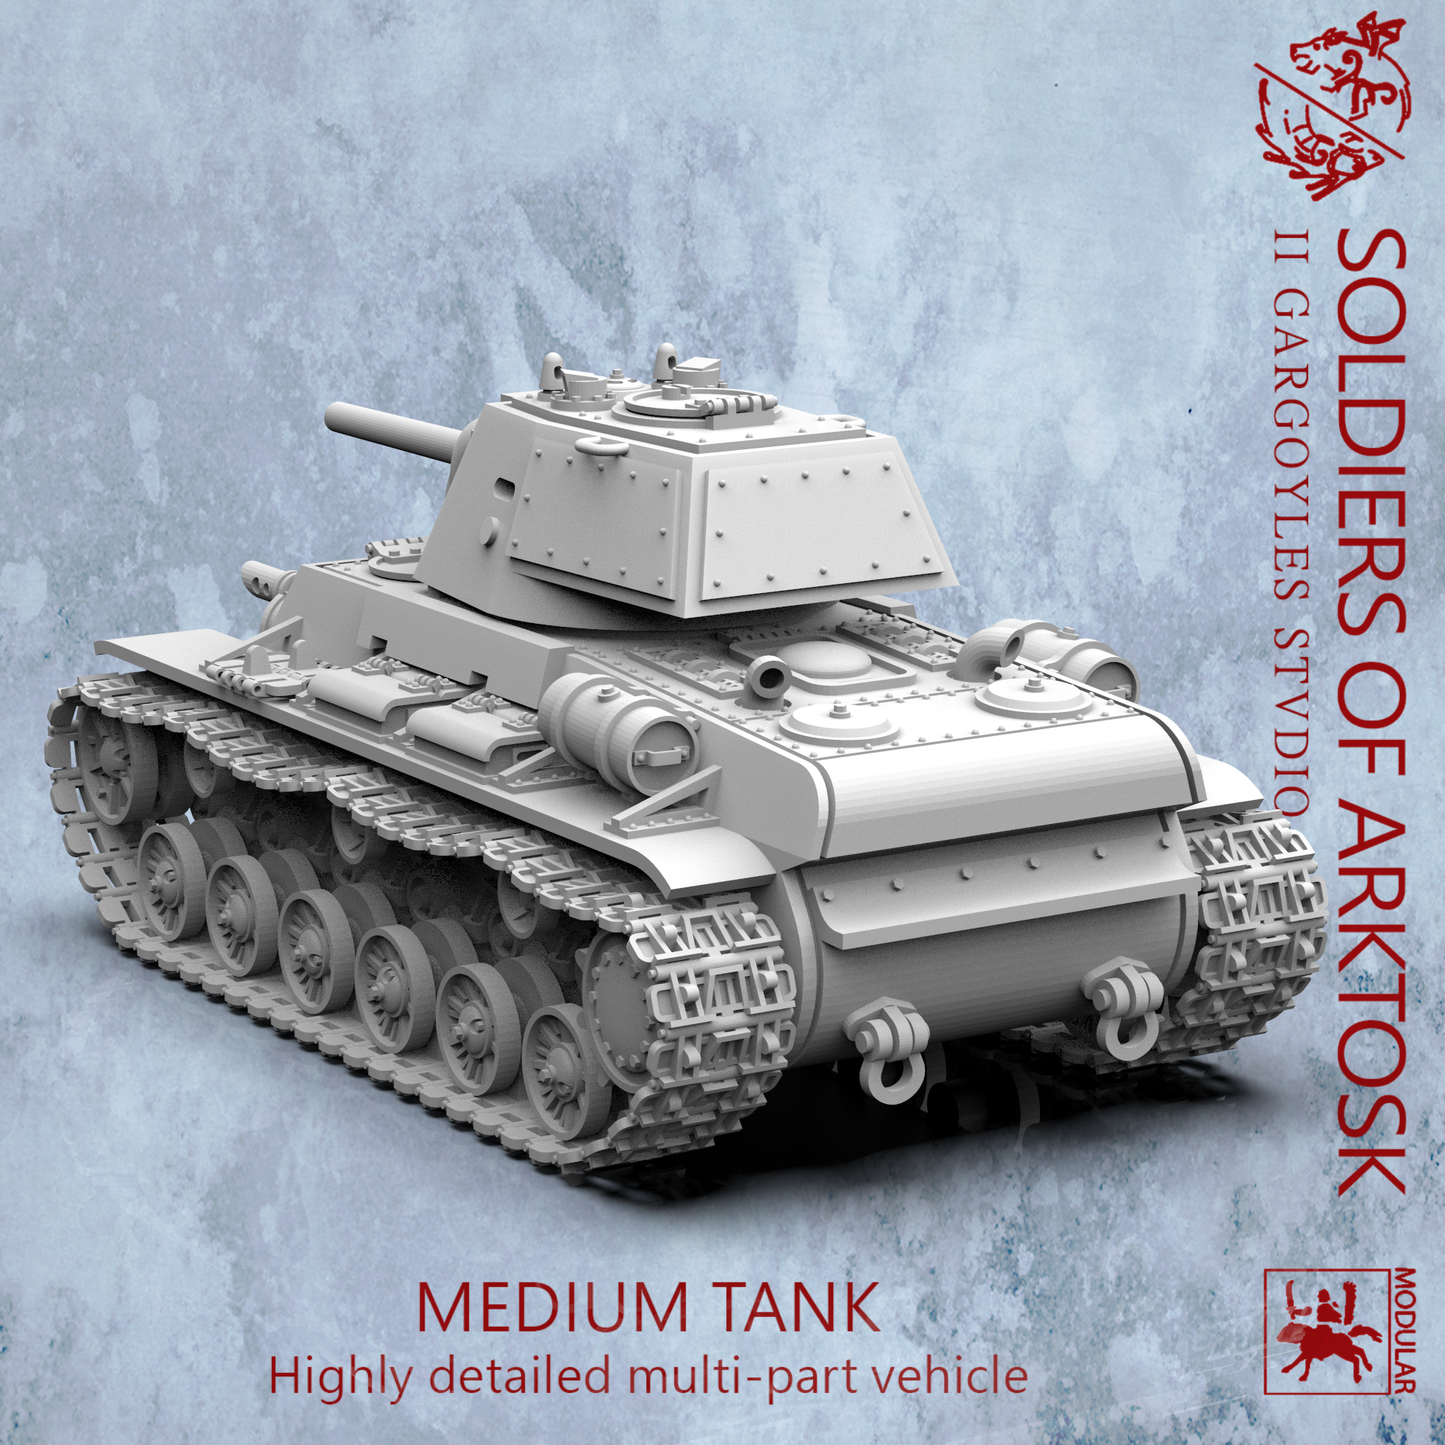 Medium Tank - Soldiers of Arktosk